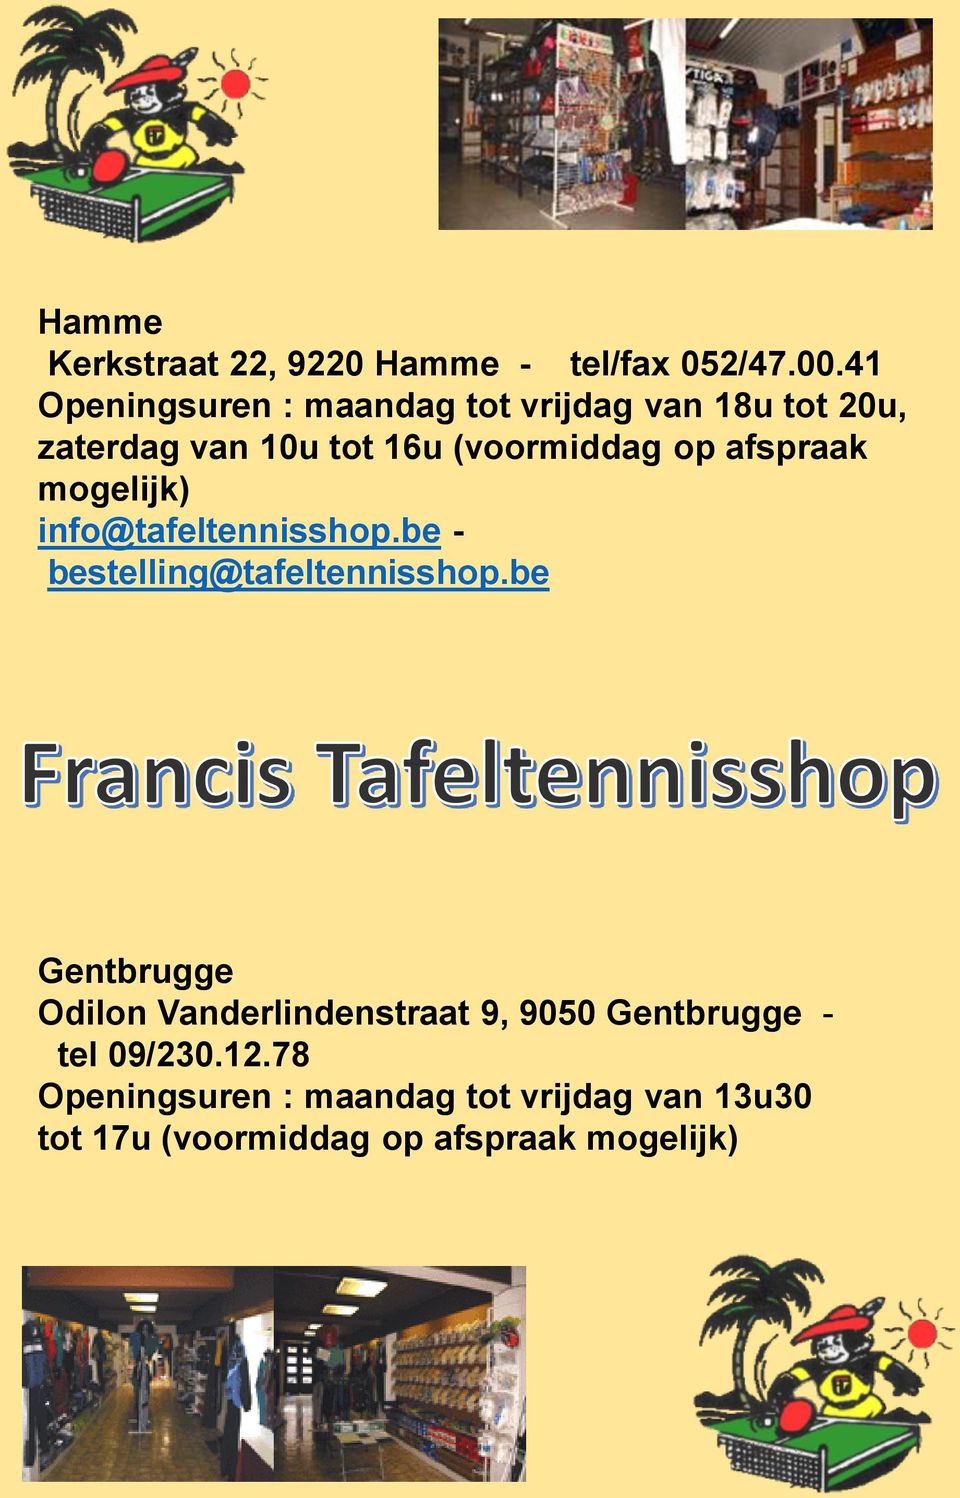 afspraak mogelijk) info@tafeltennisshop.be - bestelling@tafeltennisshop.